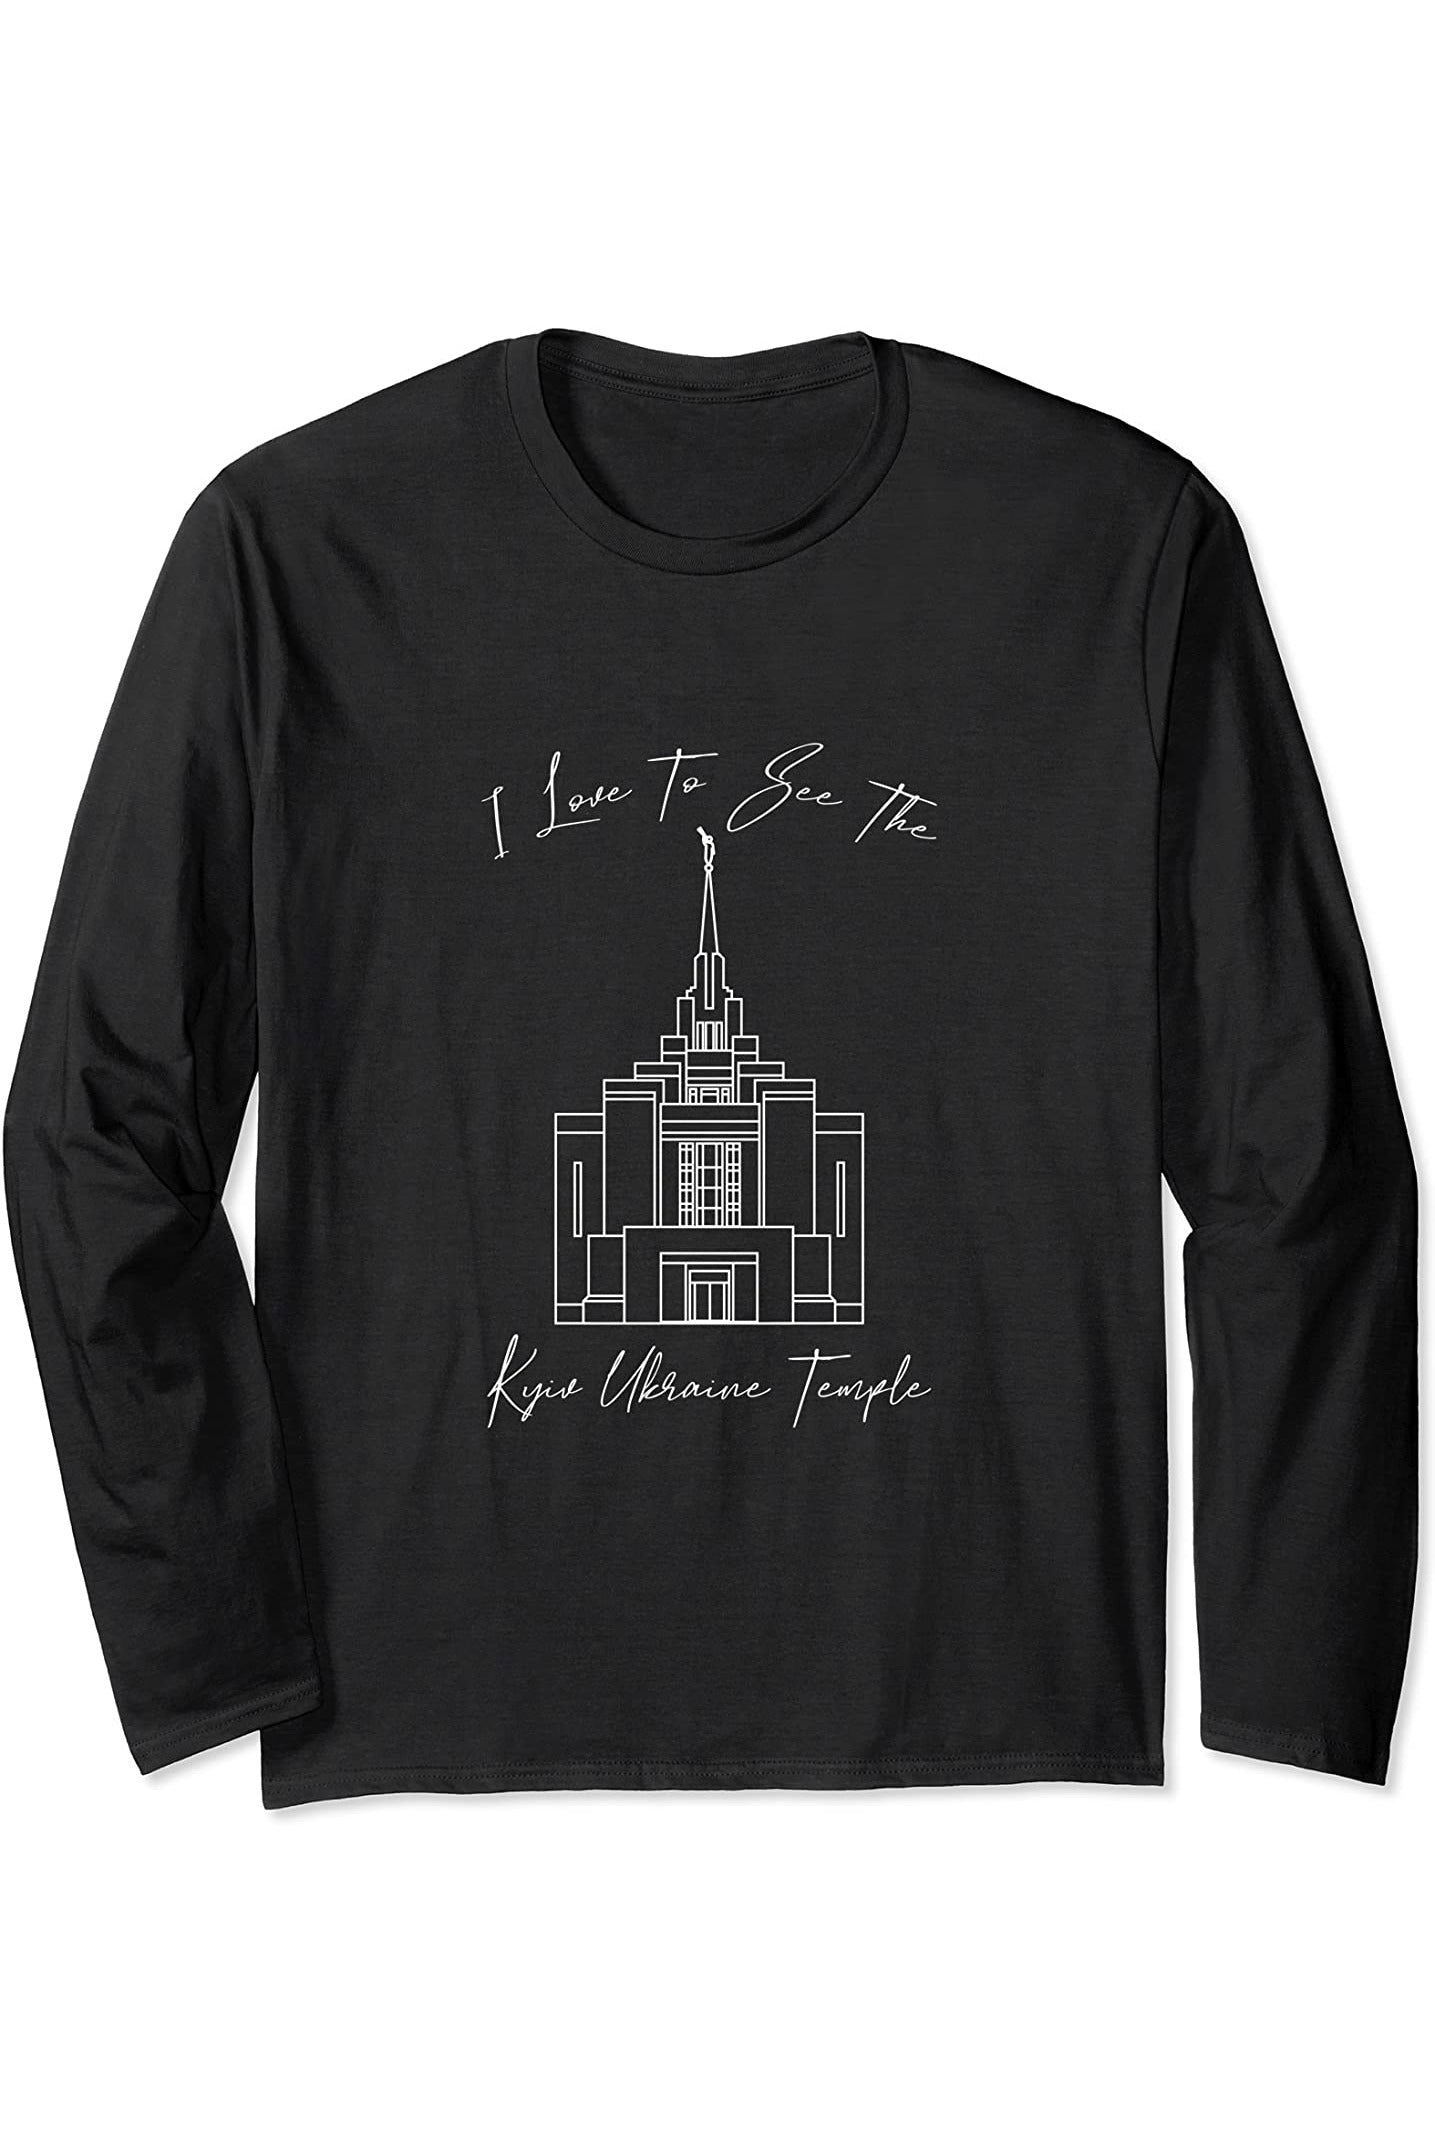 Kyiv Ucraina Temple, amo vedere il mio tempio, calligrafia Long Sleeve T-Shirt